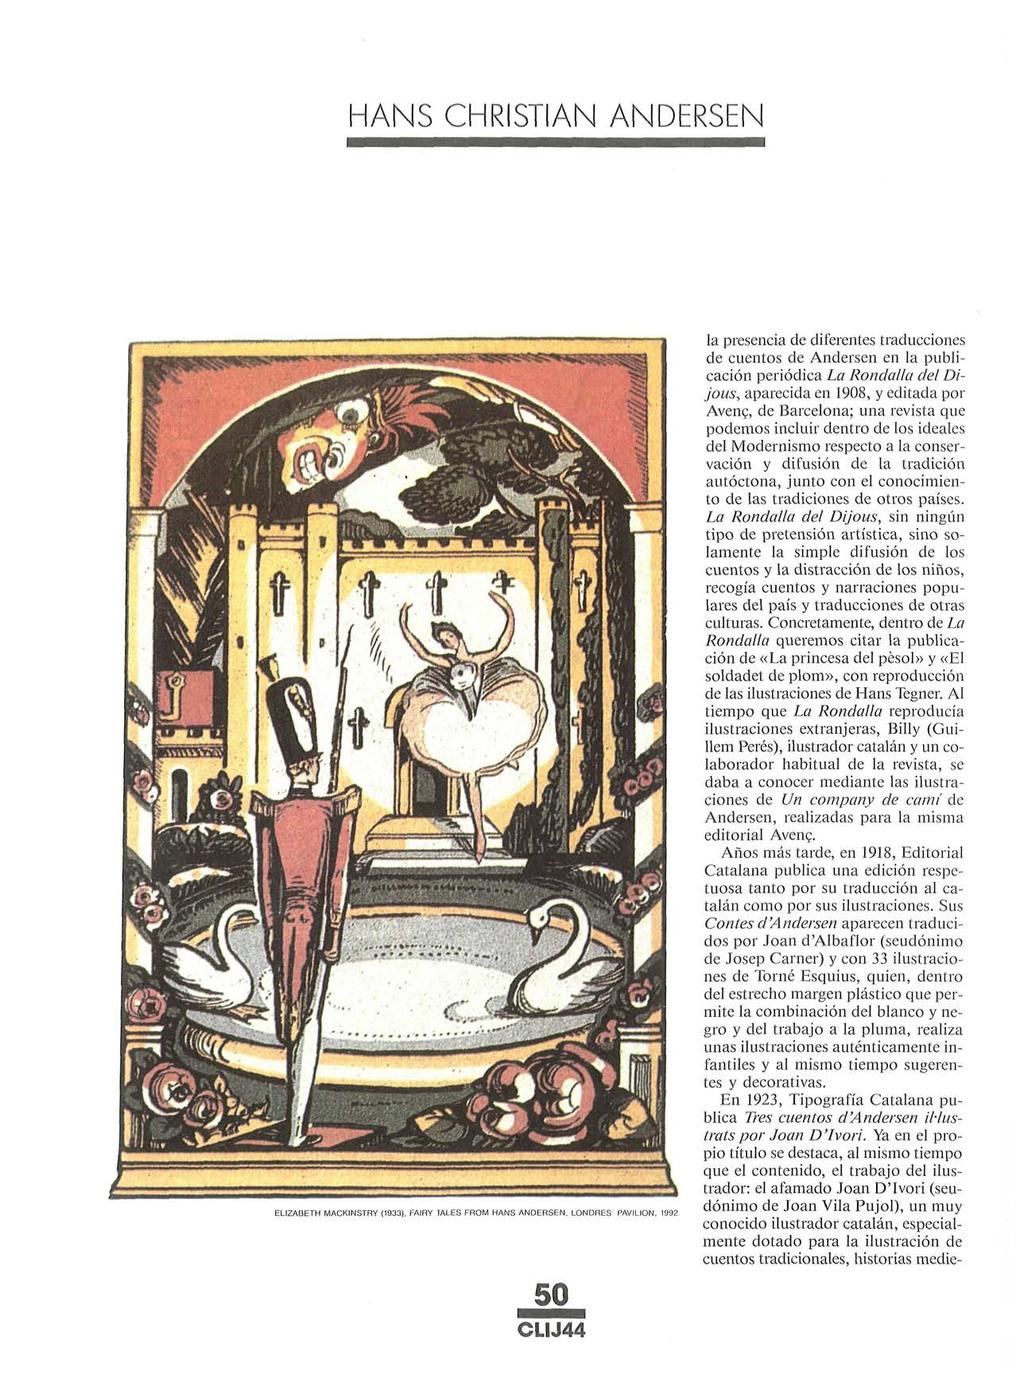 HANS CHRISTIAN ANDERSEN EUZABETH MACKINSTRY (1933), FAIRY TALES FROM HANS ANDERSEN, LONDRES PAVILION, 1992 la presencia de diferentes traducciones de cuentos de Andersen en la publicación periódica